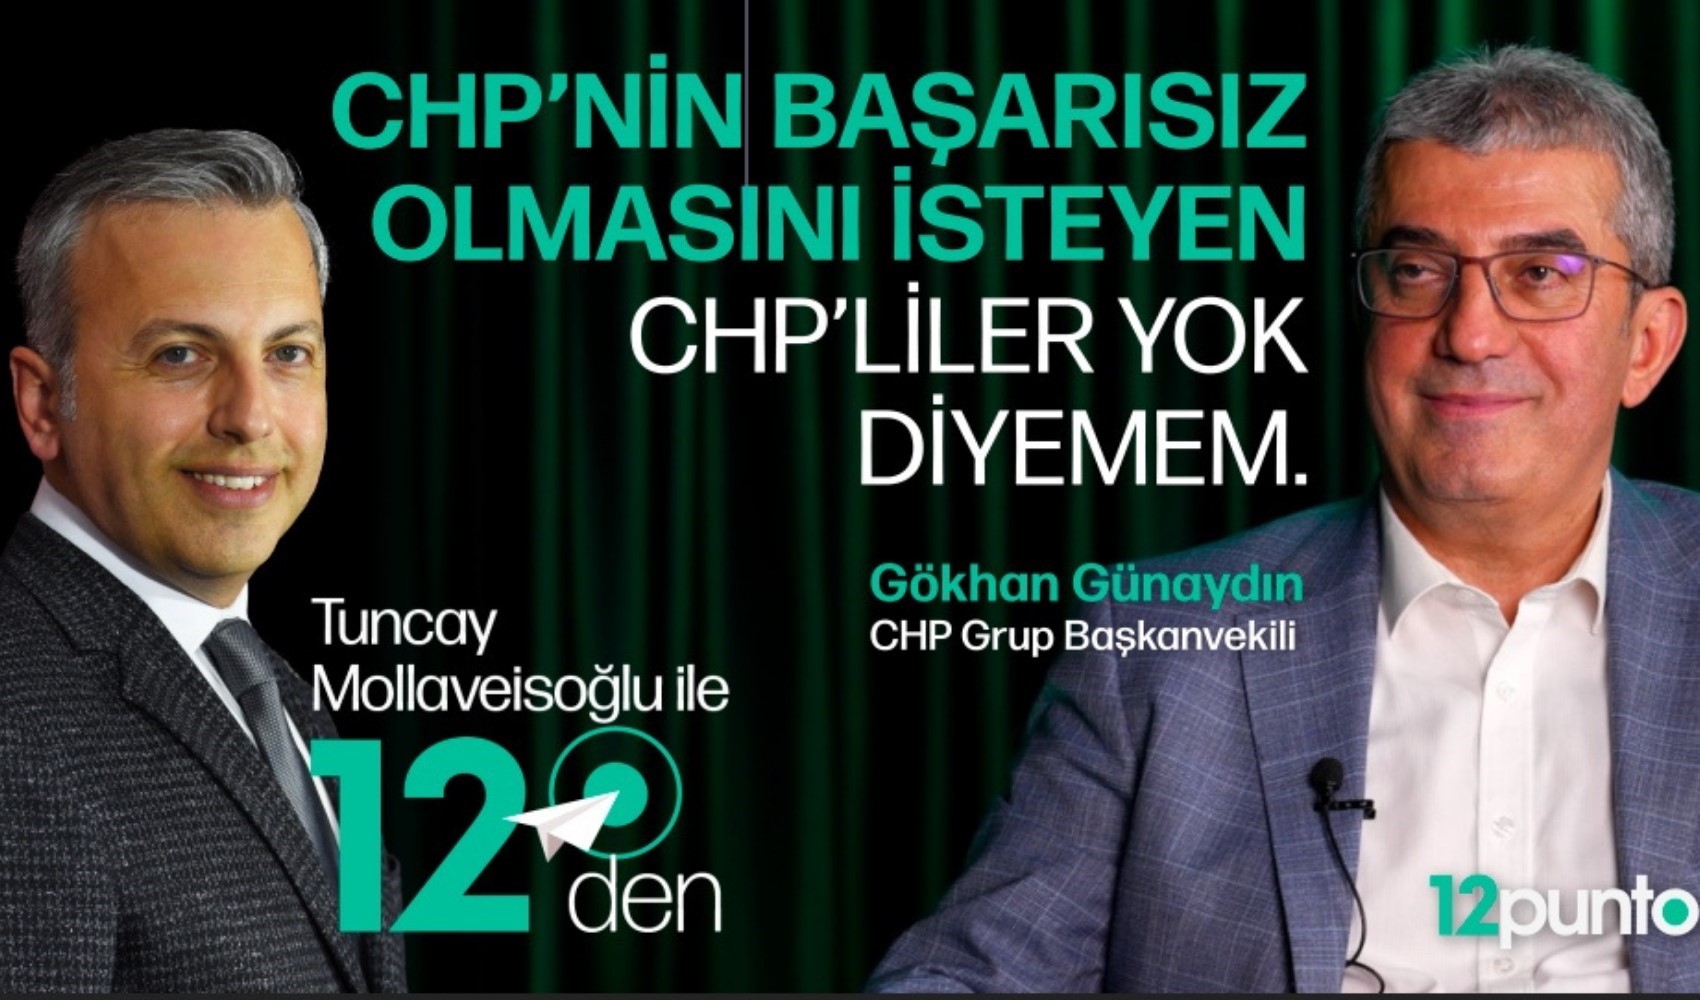 CHP Grup Başkanvekili Gökhan Günaydın, Tuncay Mollaveisoğlu'nun sorularını yanıtladı... Yarın 12puntotv YouTube kanalında